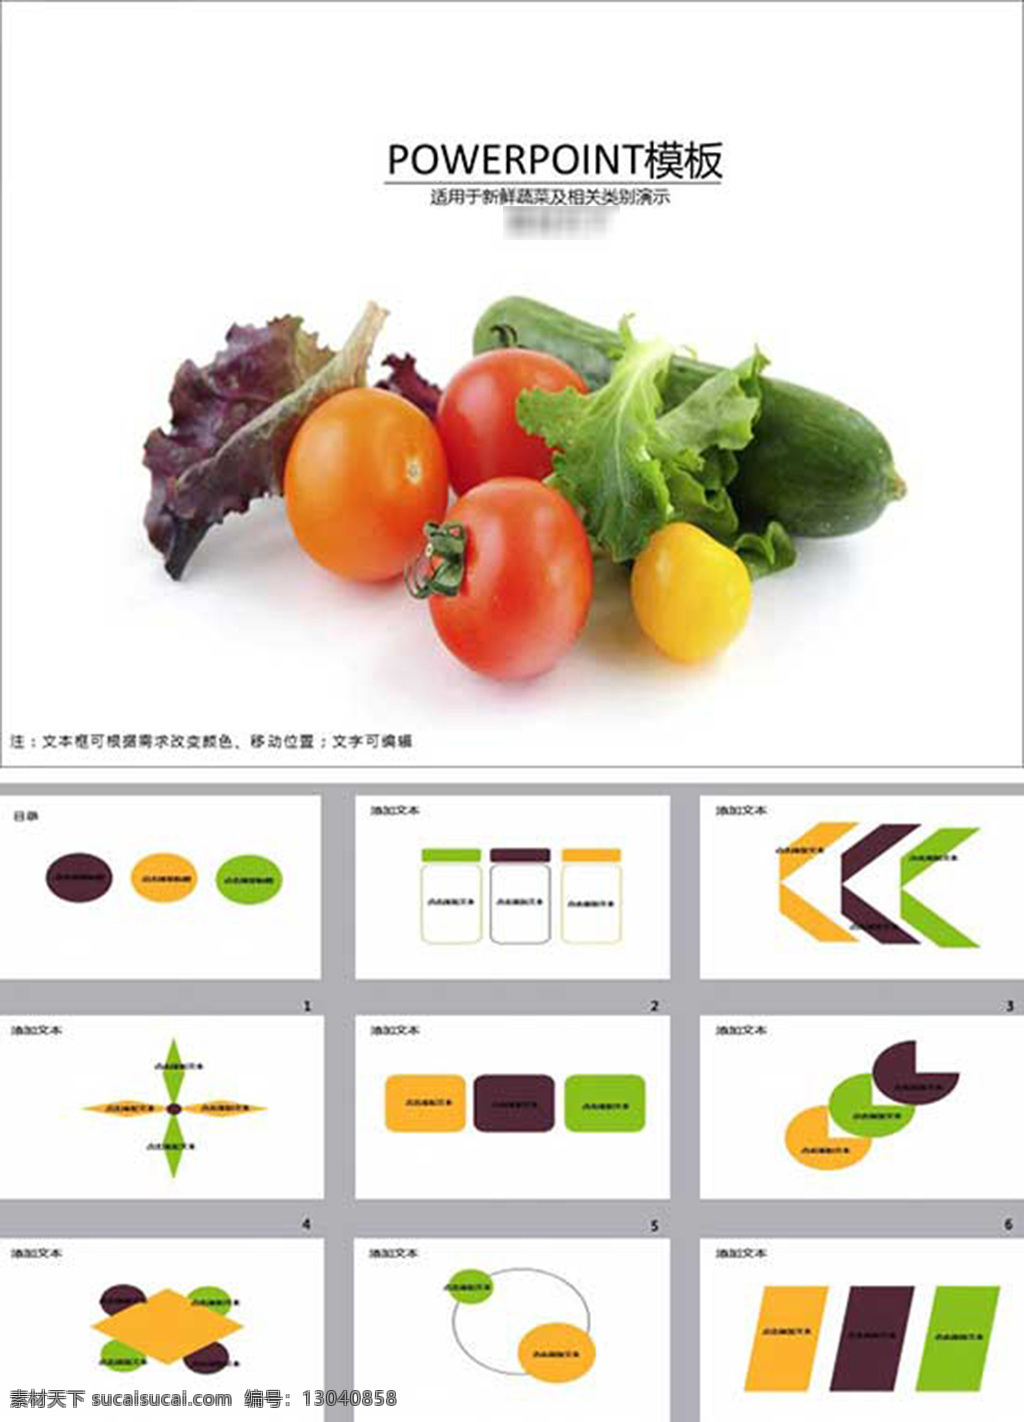 健康 营养 蔬菜 模板 ppt幻灯片 pptx 白色